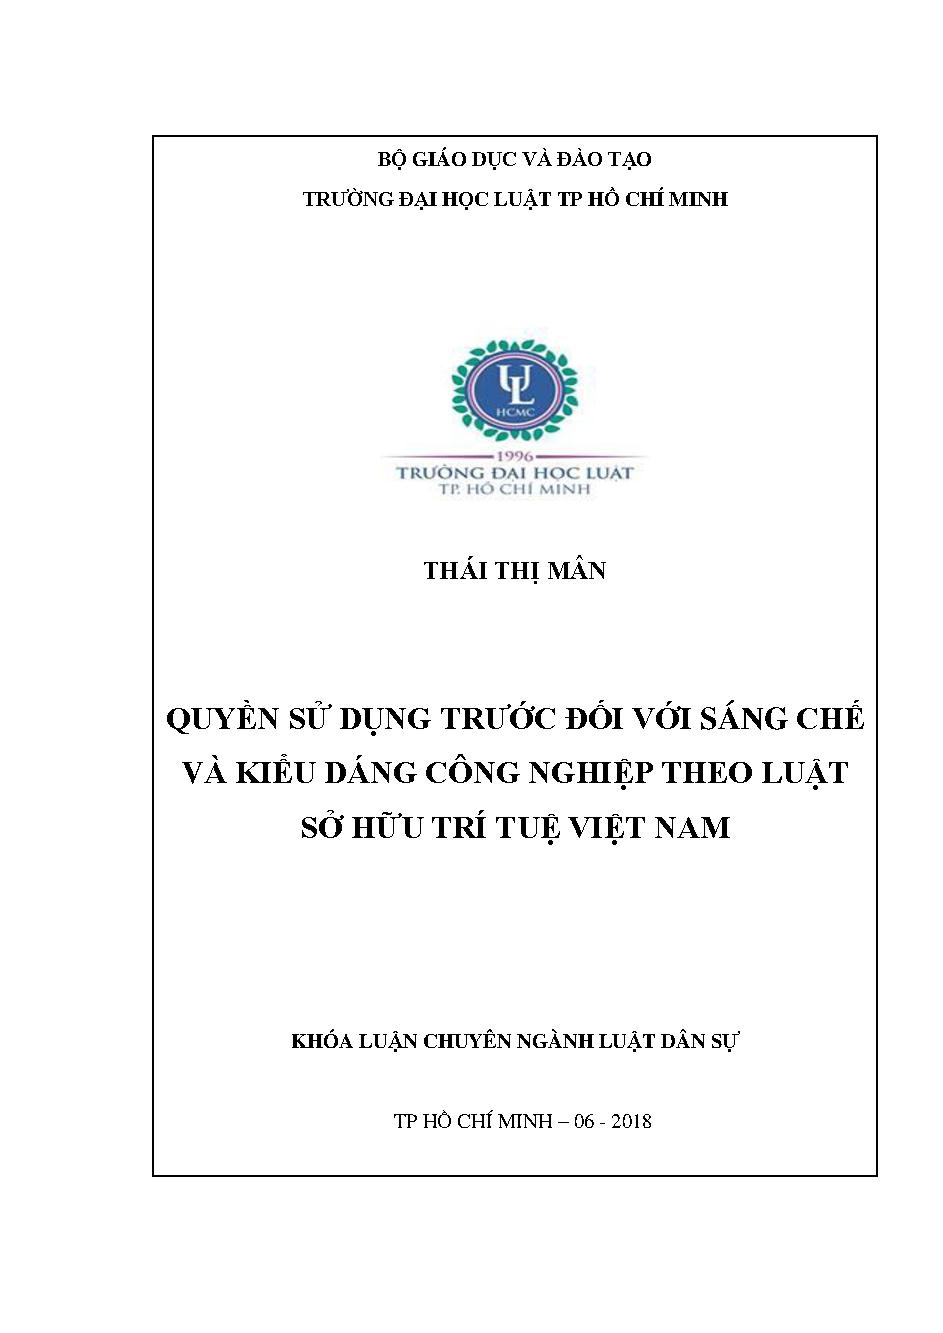 Quyền sử dụng trước đối với sáng chế và kiểu dáng công nghiệp theo luật sở hữu trí tuệ Việt Nam